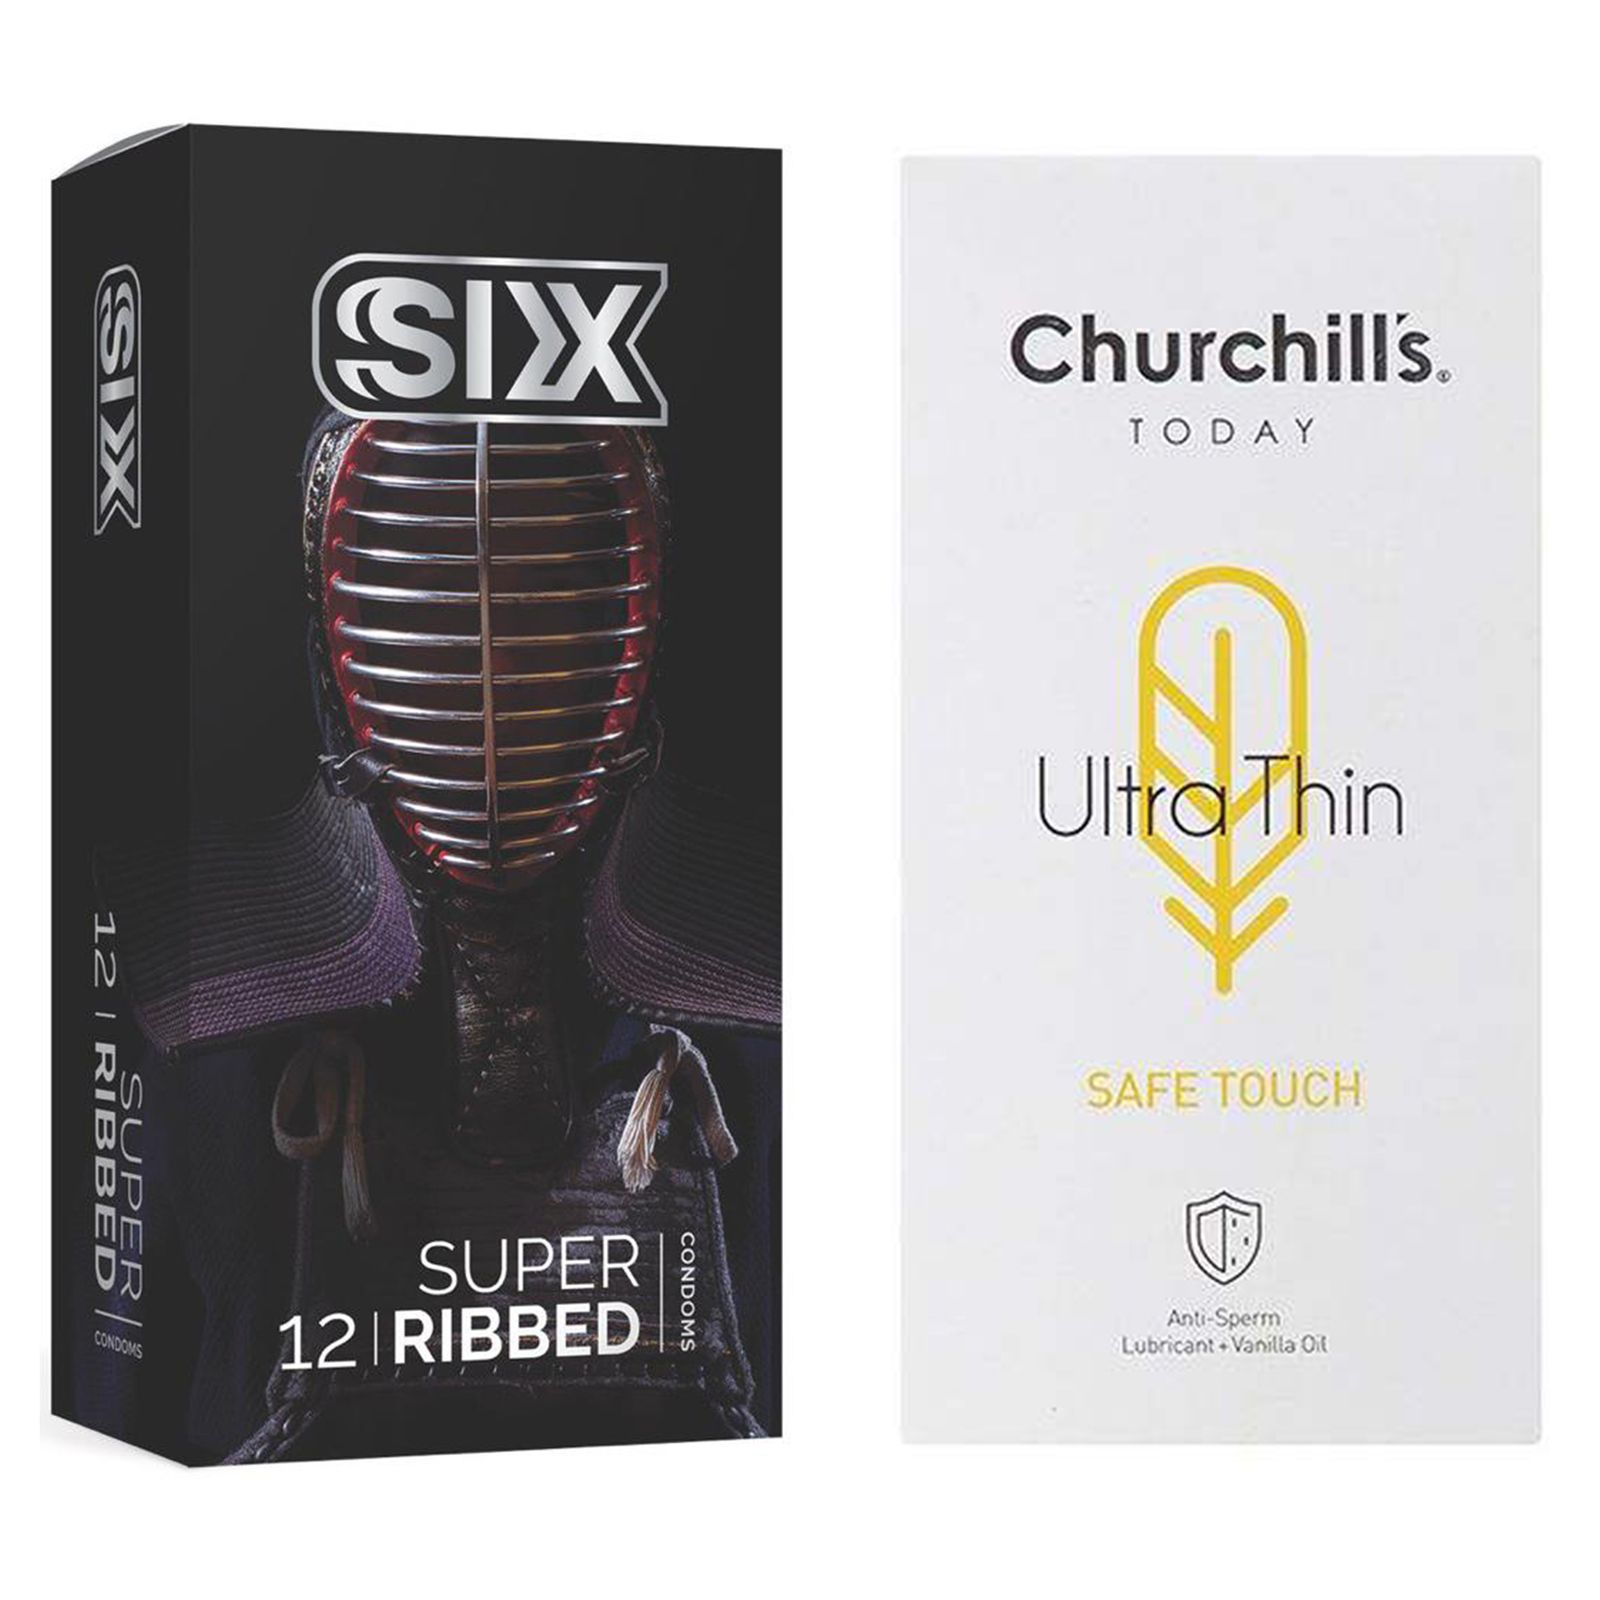 کاندوم چرچیلز مدل Safe Touch بسته 12 عددی به همراه کاندوم سیکس مدل شیاردار بسته 12 عددی